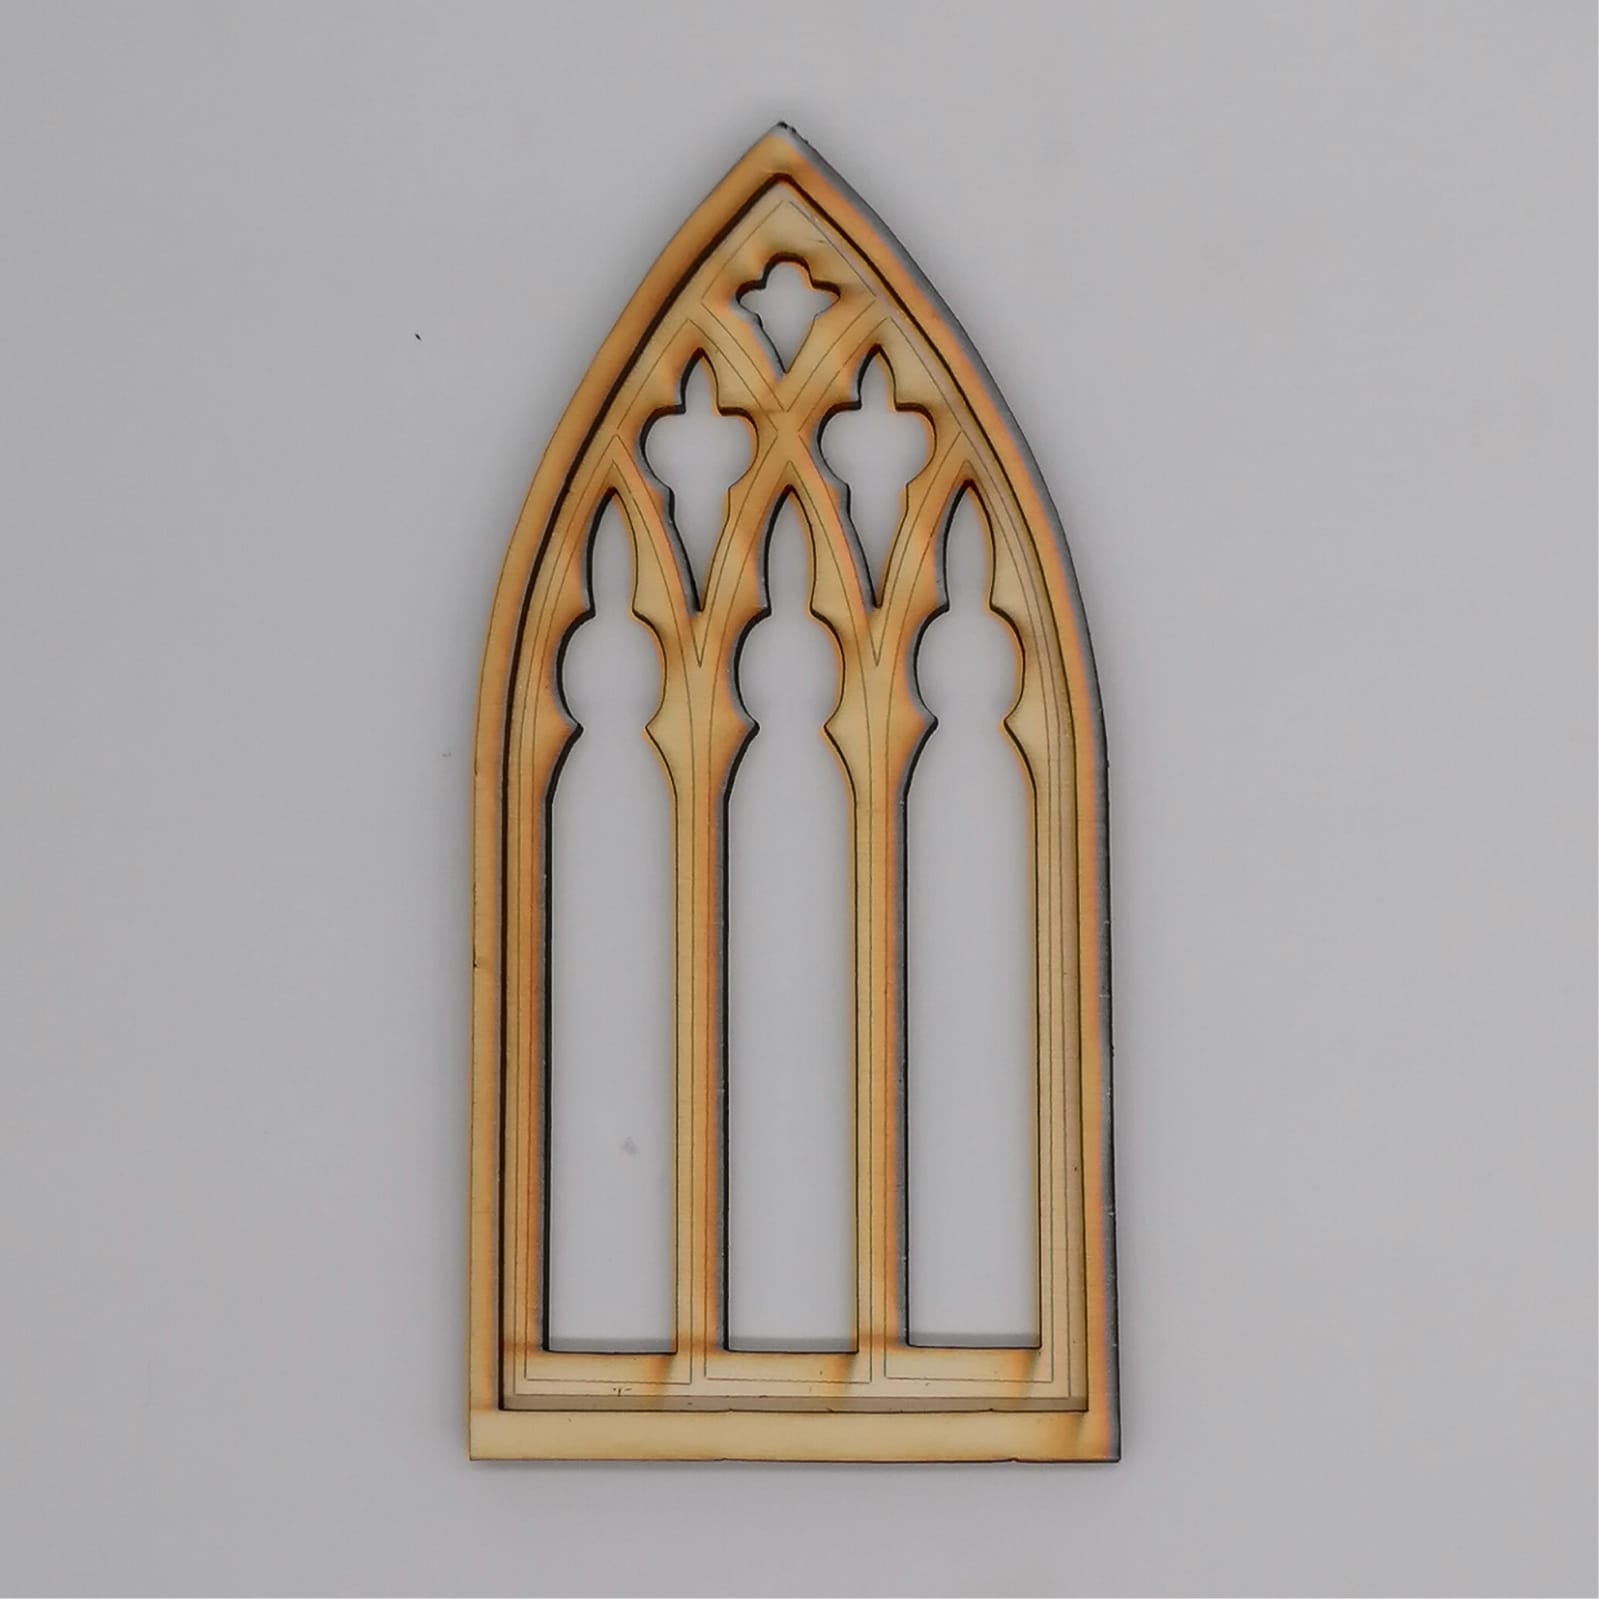 Gothik Miniatur Fenster - Design A - Miniaturen